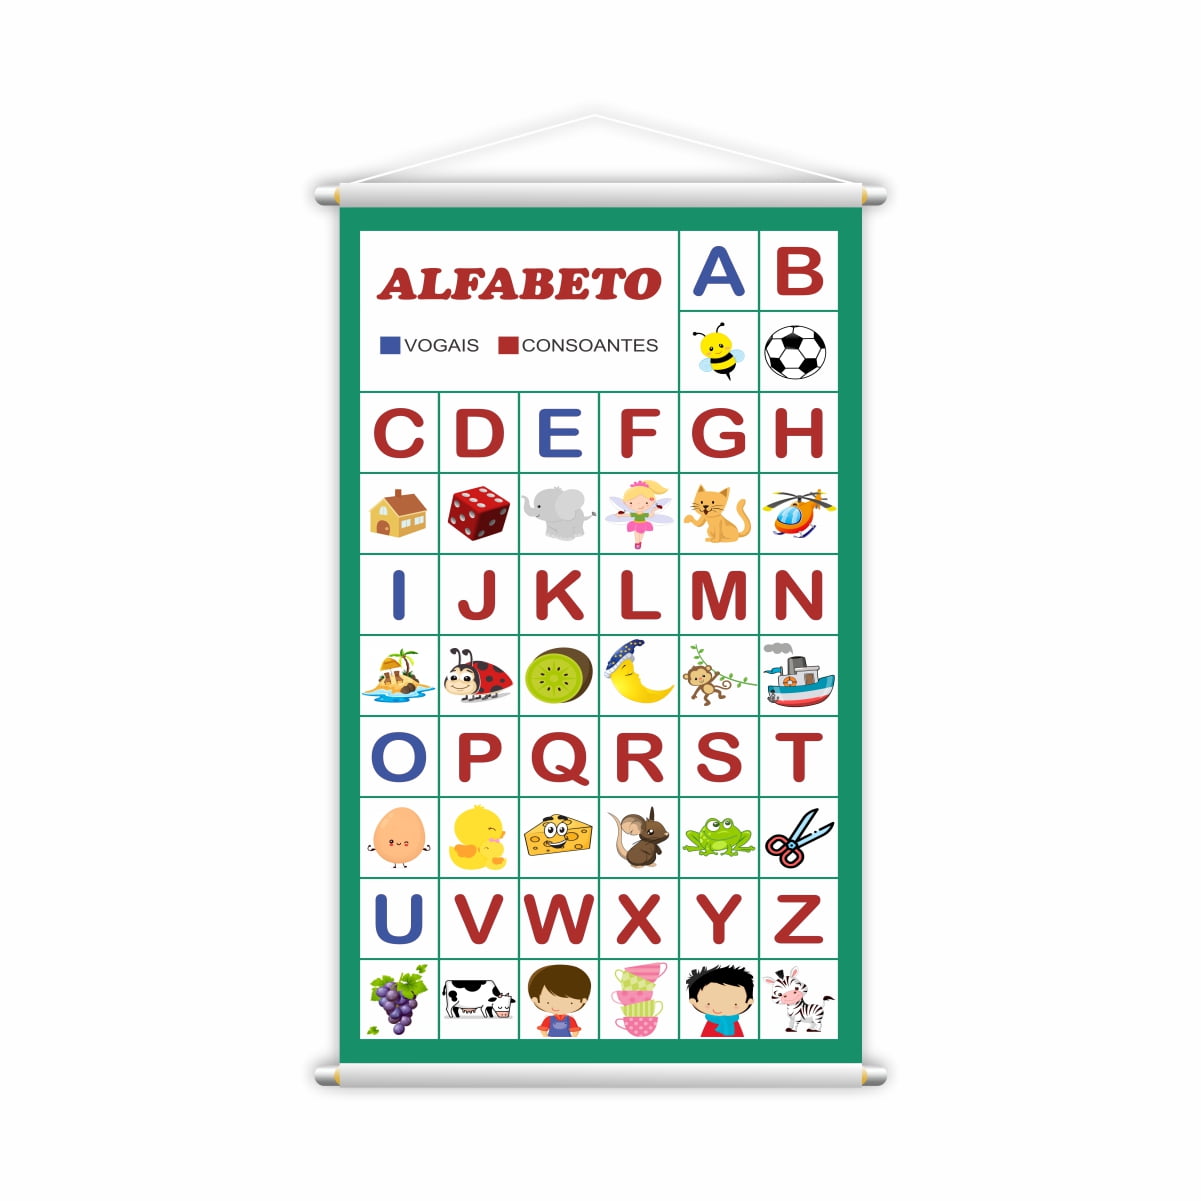 Banners Pedagógicos Escolares Alfabeto Vogais e Consoantes